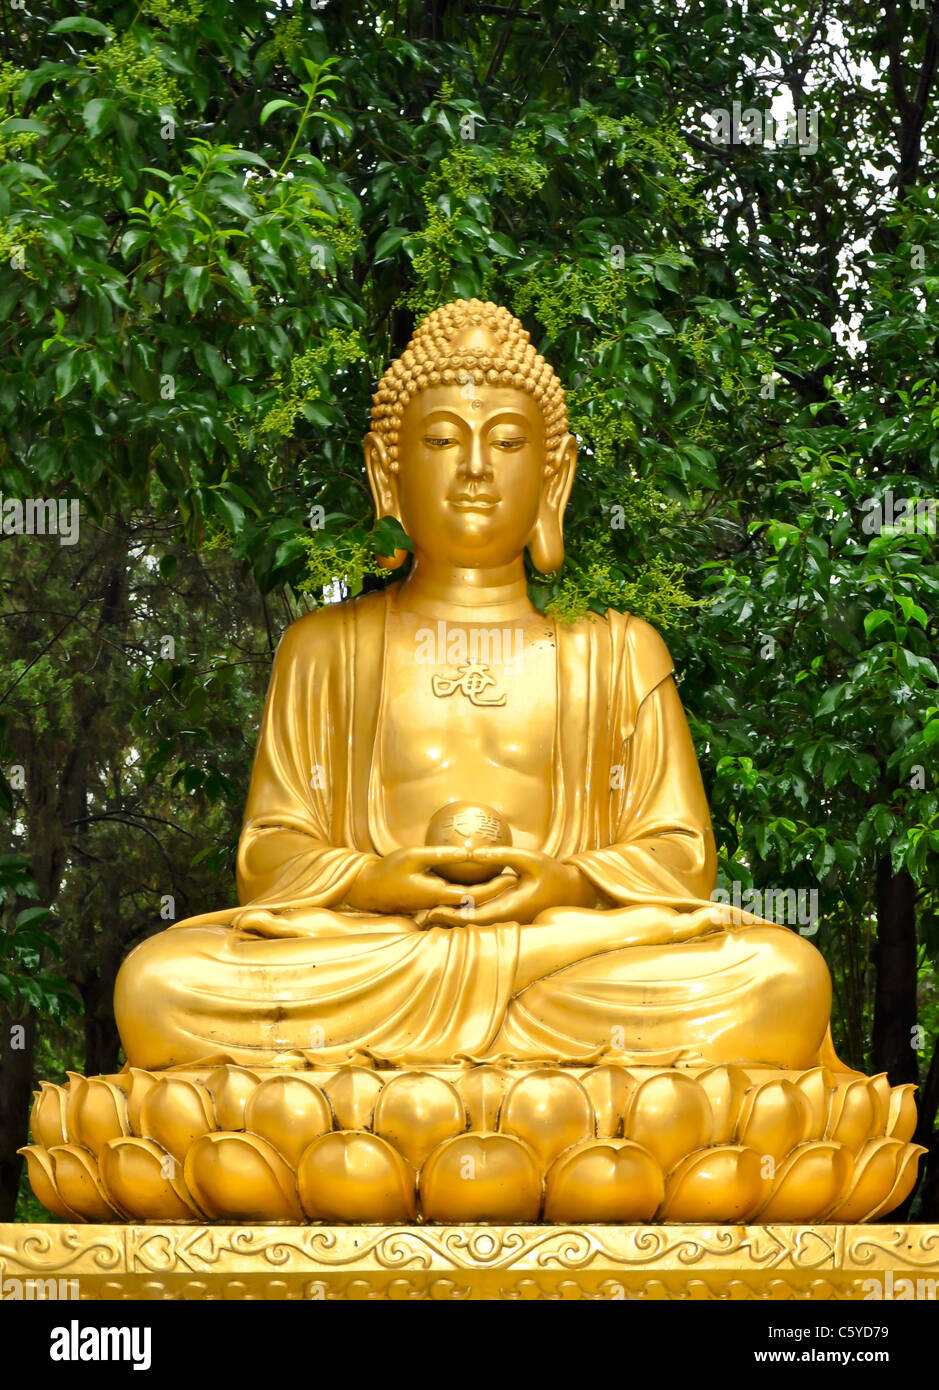 Estatua dorada de un buda sentado meditando en un jardín. Foto de stock